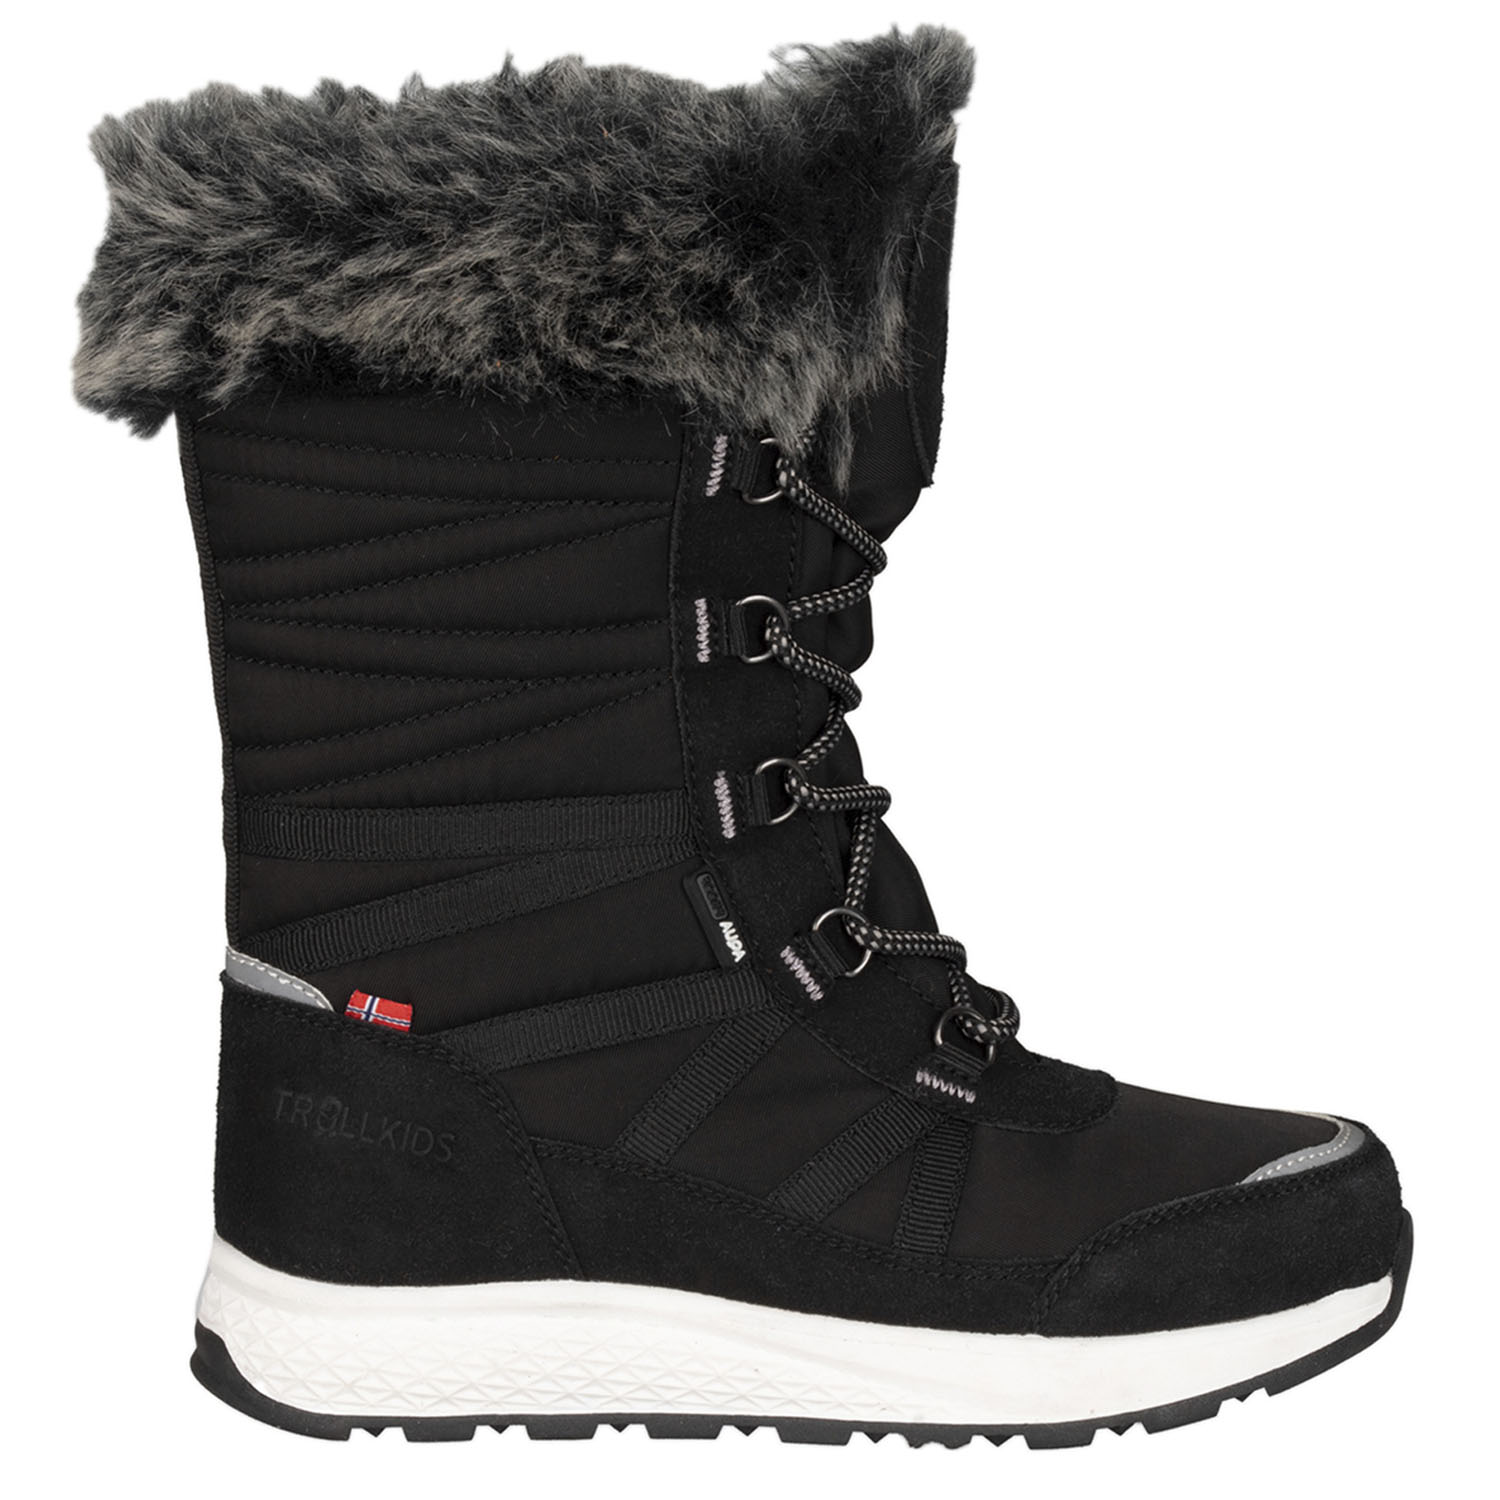 Ботинки детские Trollkids Girls Hemsedal Winter Boots XT Black